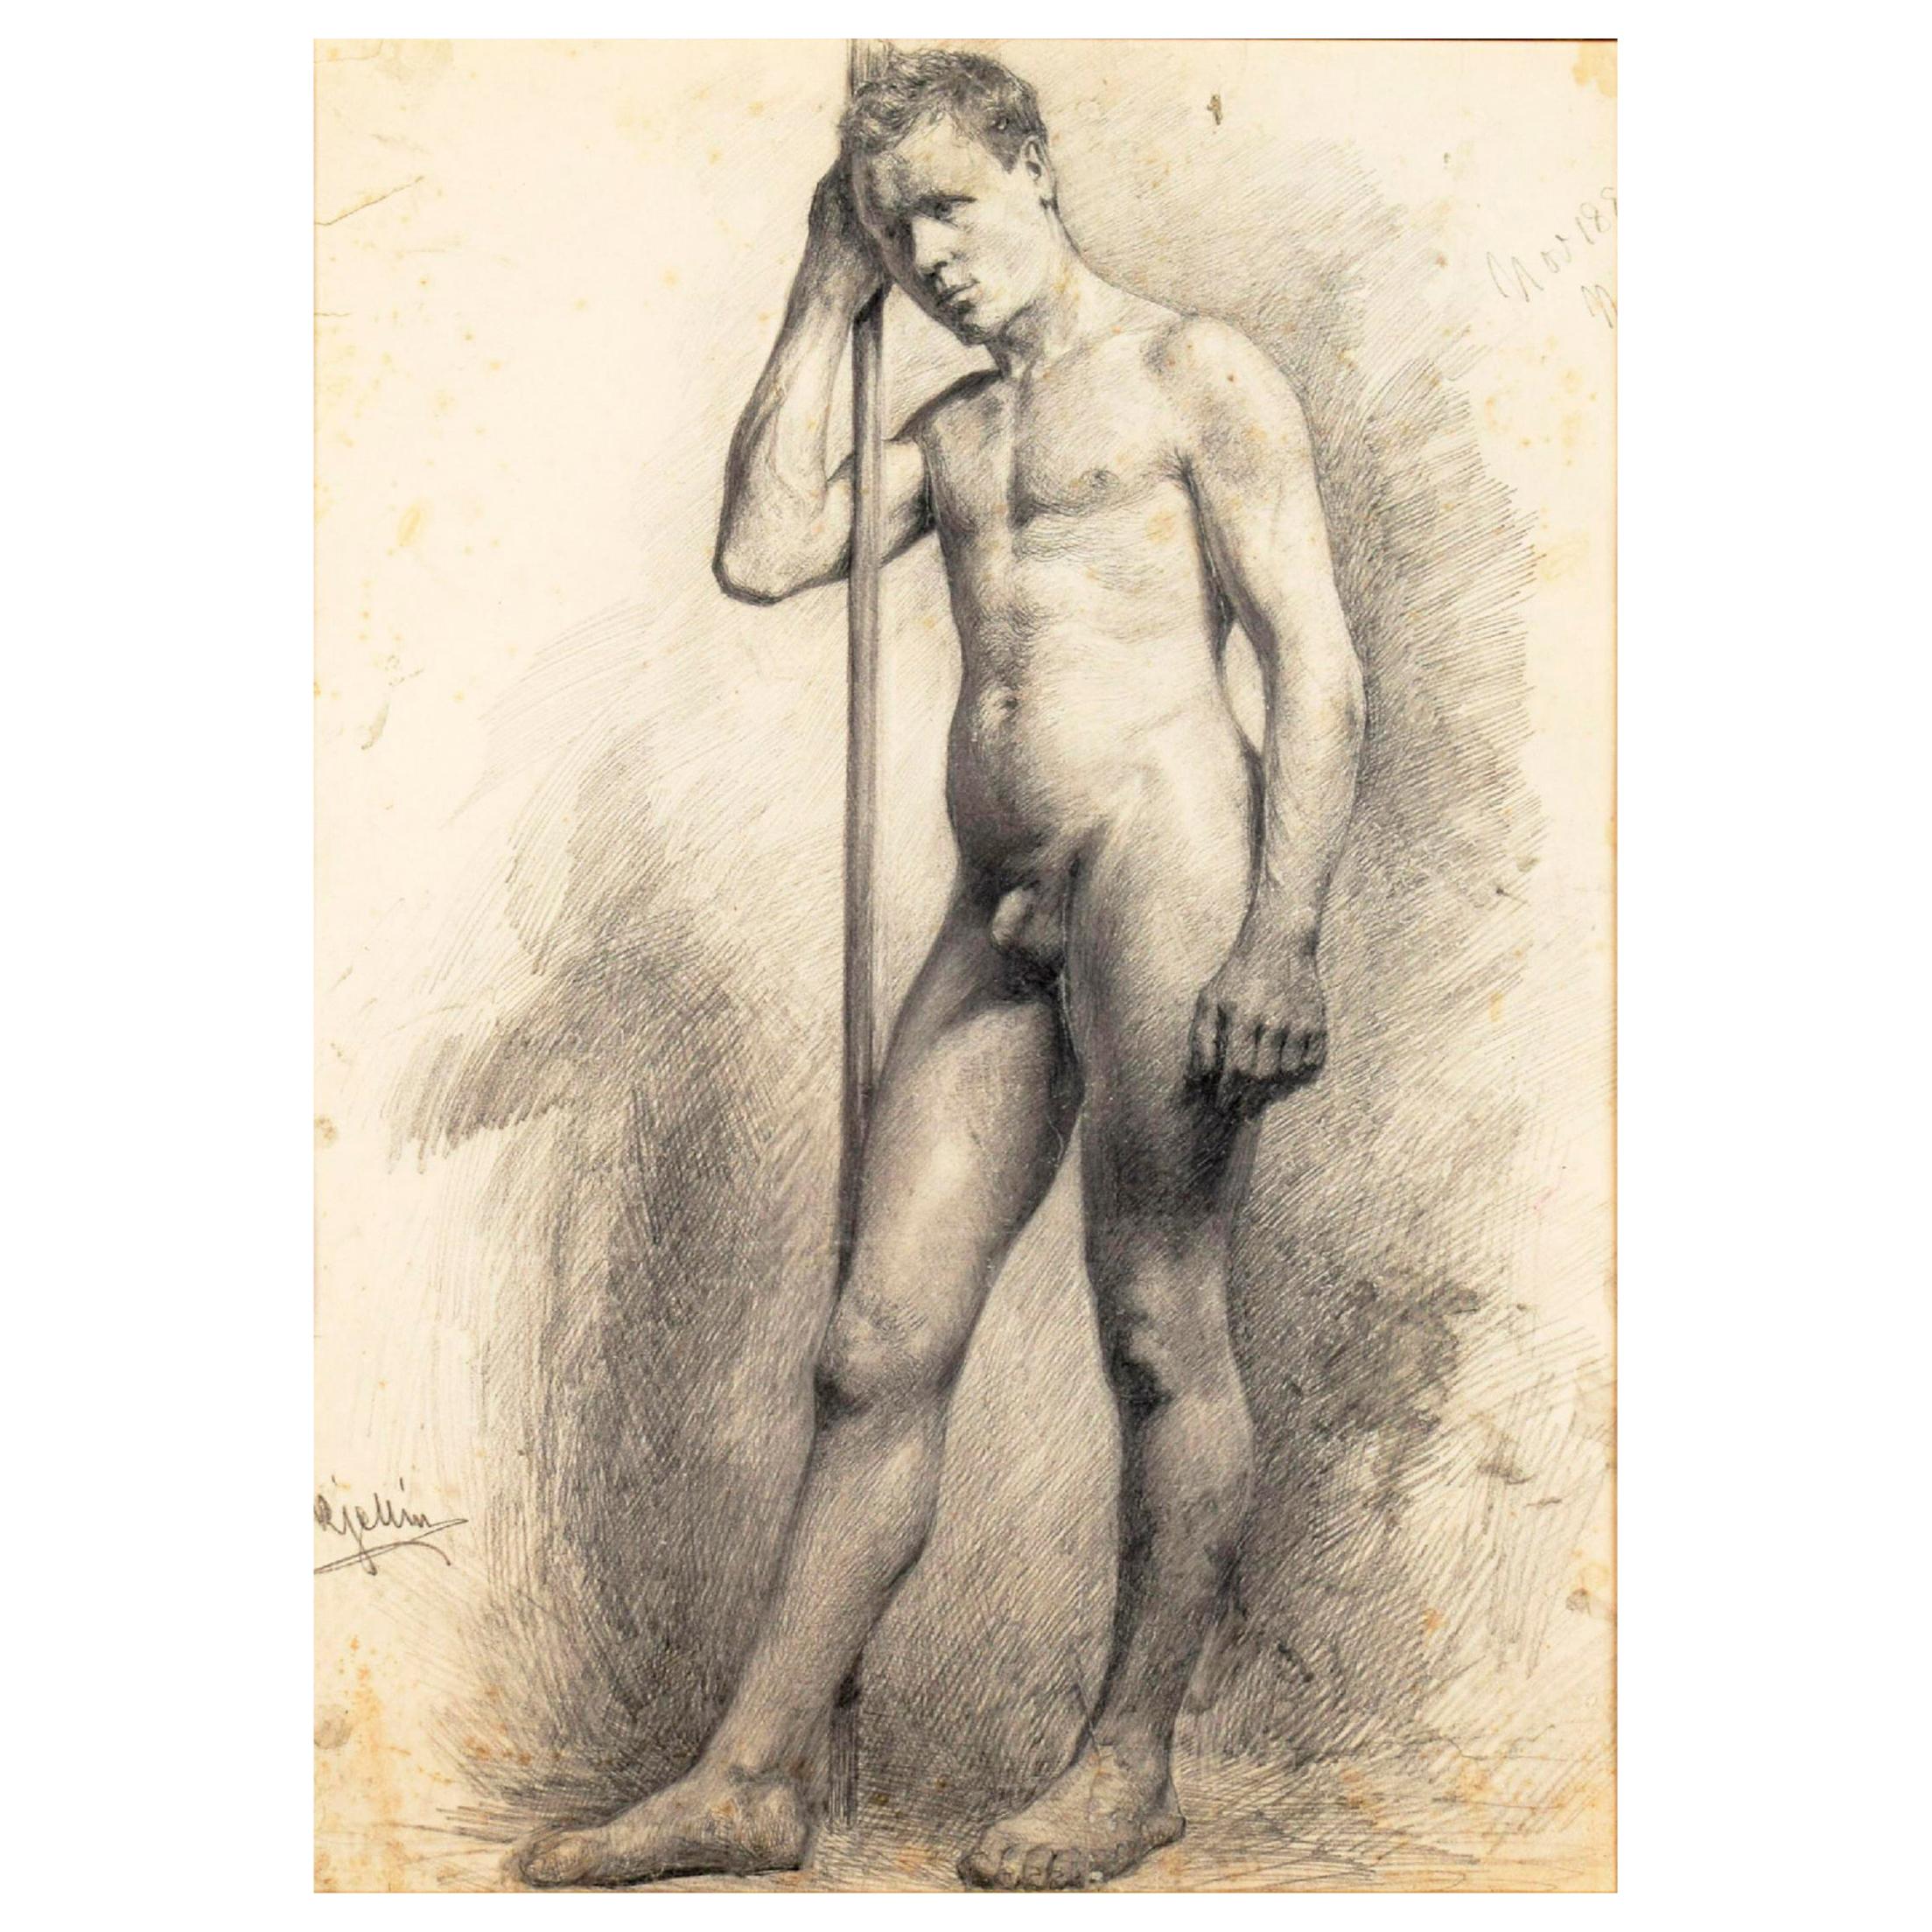 Étude académique d'un homme nu réalisée en 1881 par l'artiste suédois Carl Kjellin